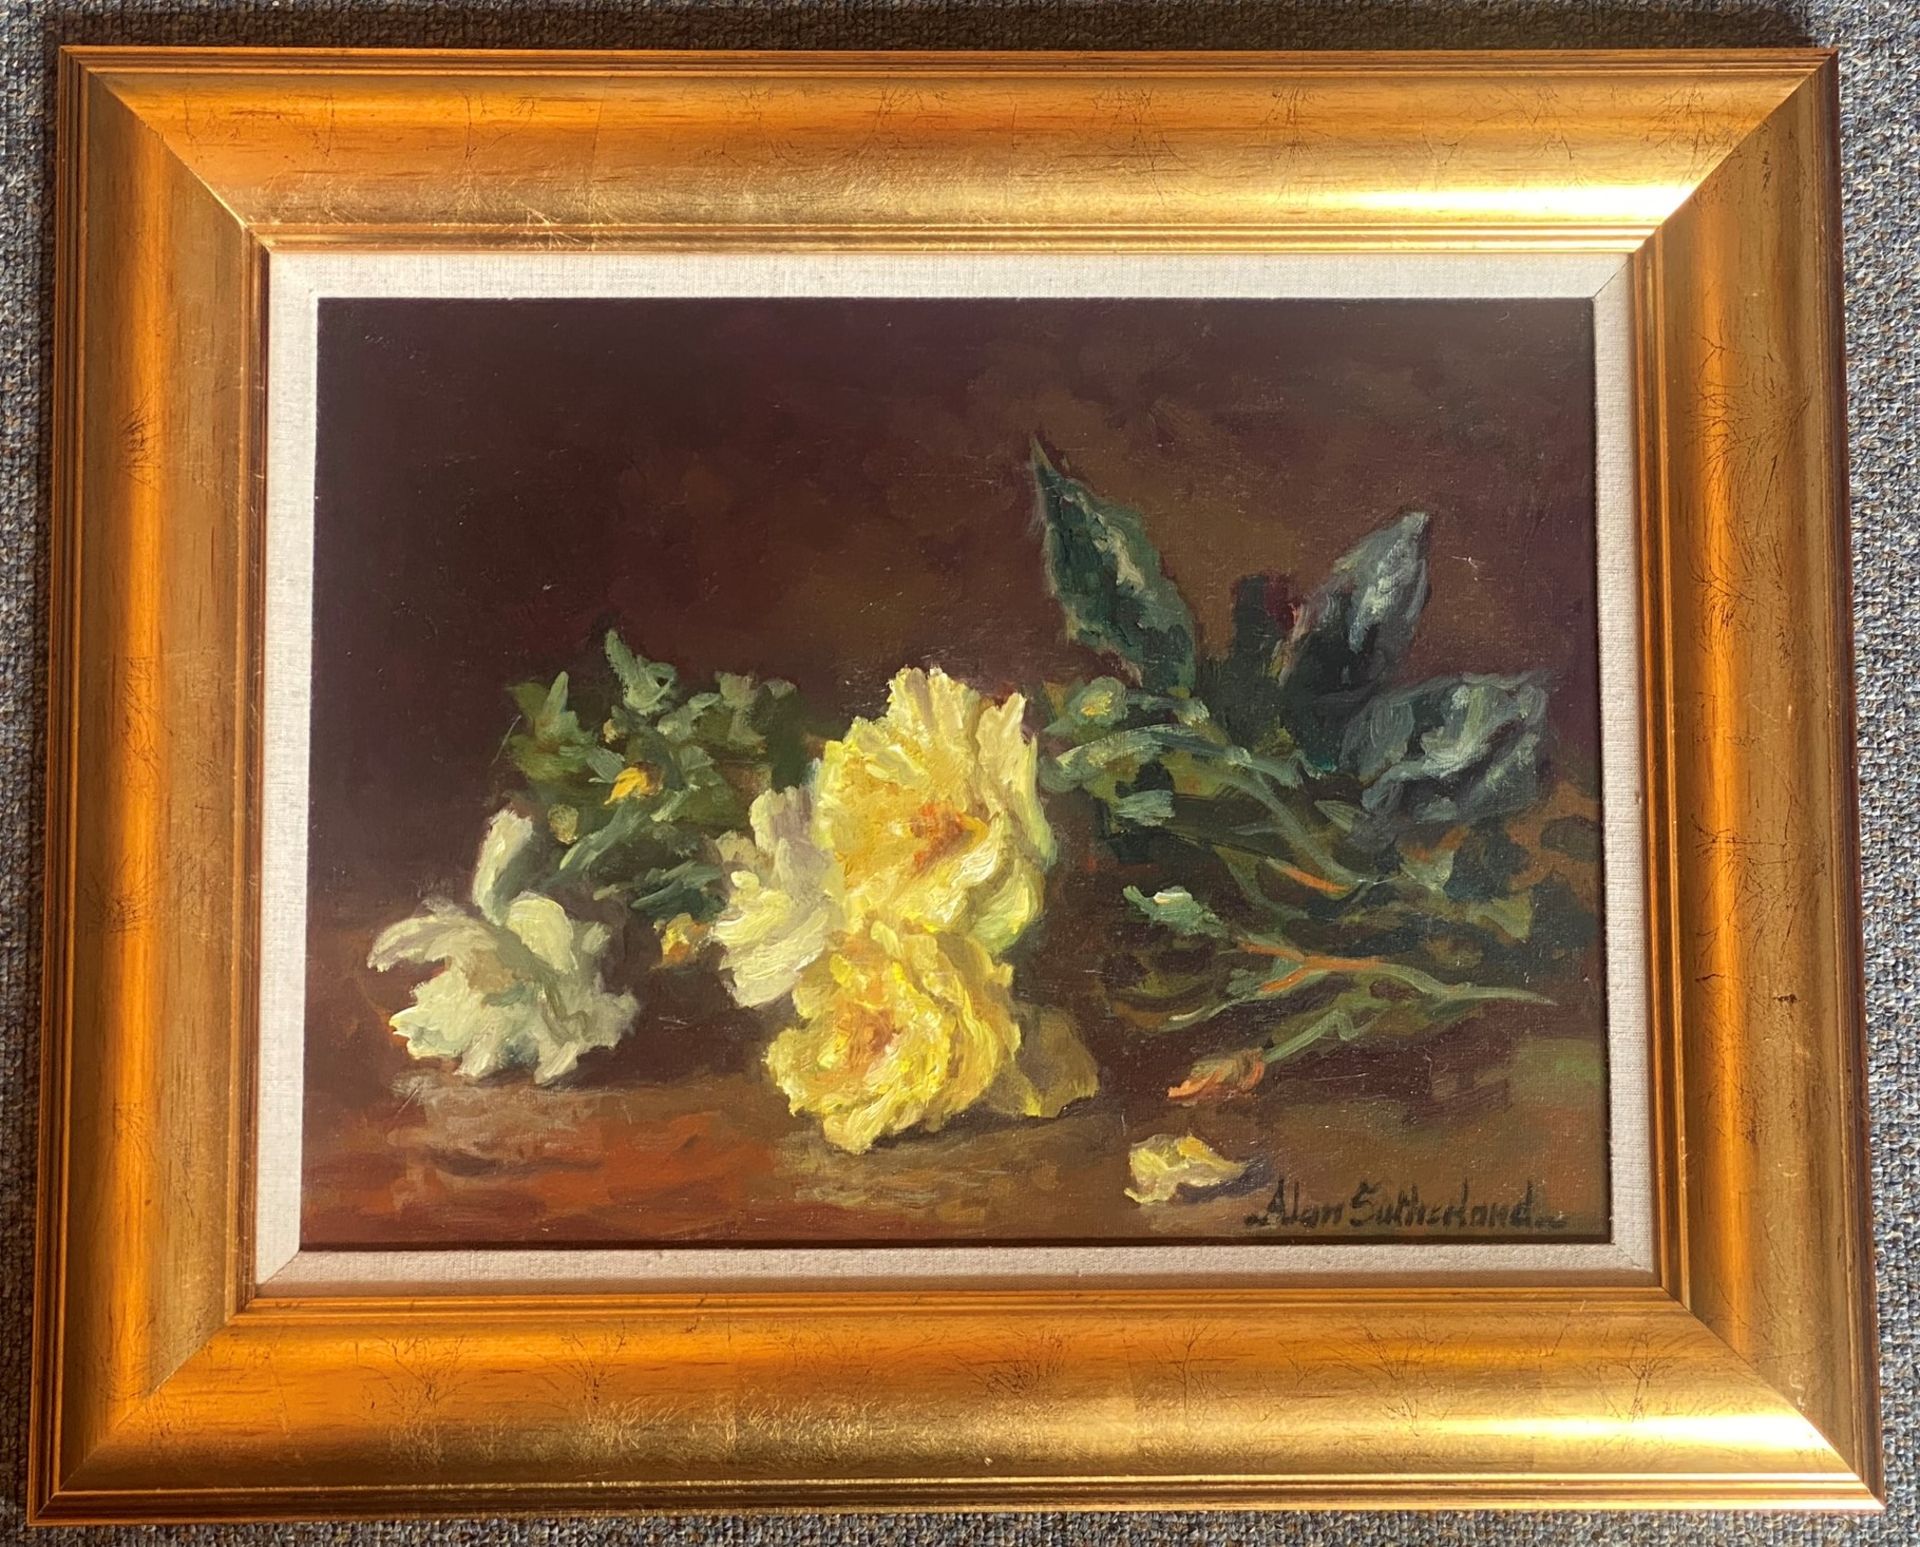 Alan Gordon Dunnett Sutherland bn 1931 Original signed oil painting "dog Roses" - Image 2 of 4